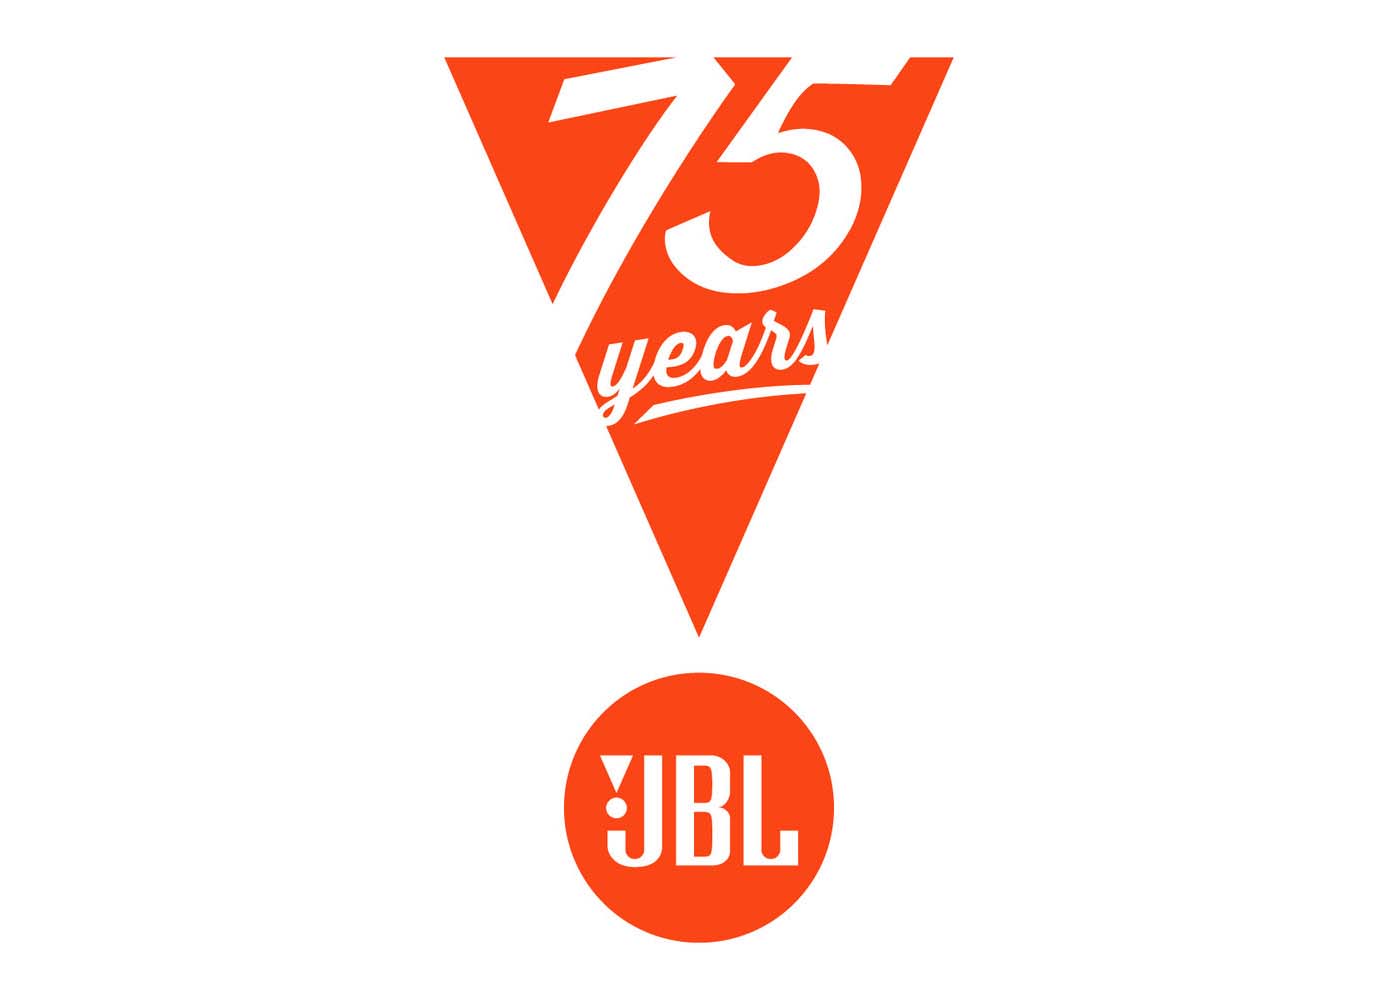 Nhìn lại các cột mốc đáng nhớ trong hành trình 75 năm hình thành và phát triển của JBL